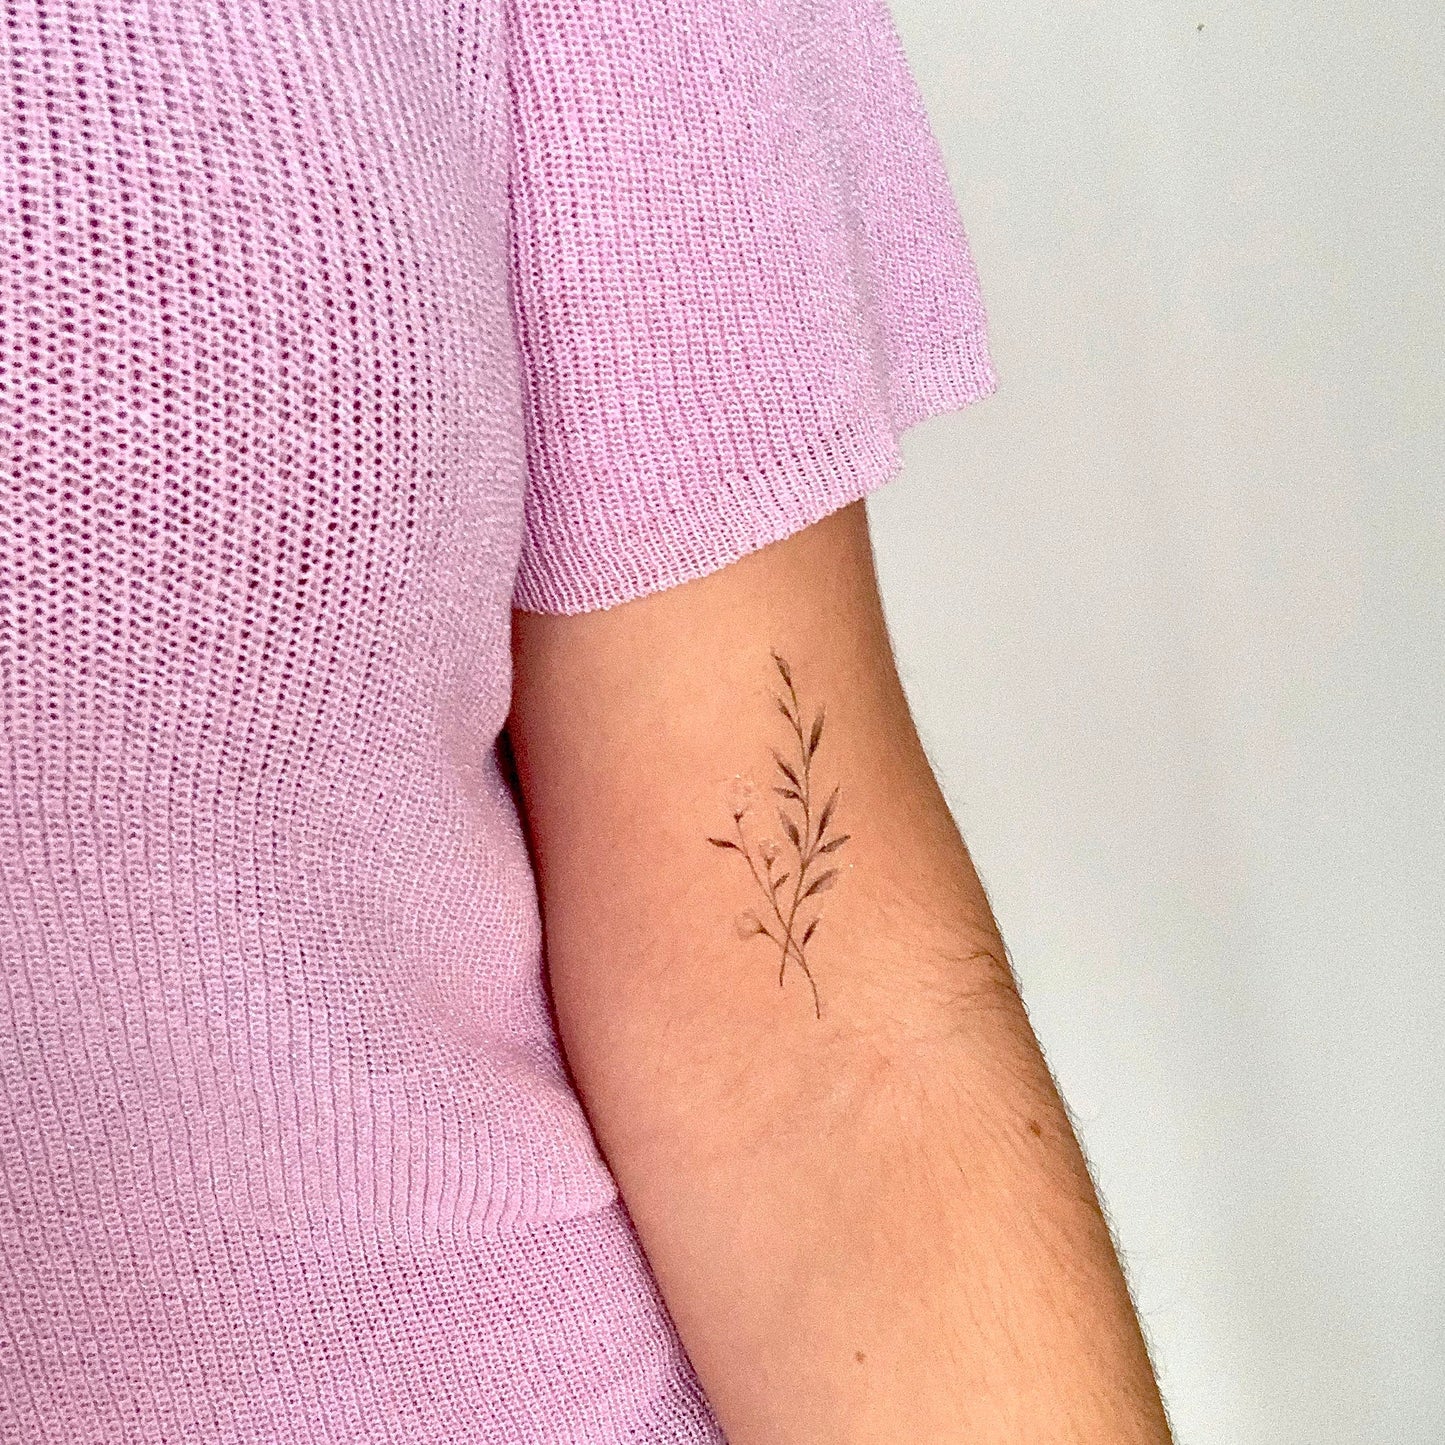 Floral e (set of 2) - Temporary Tattoo